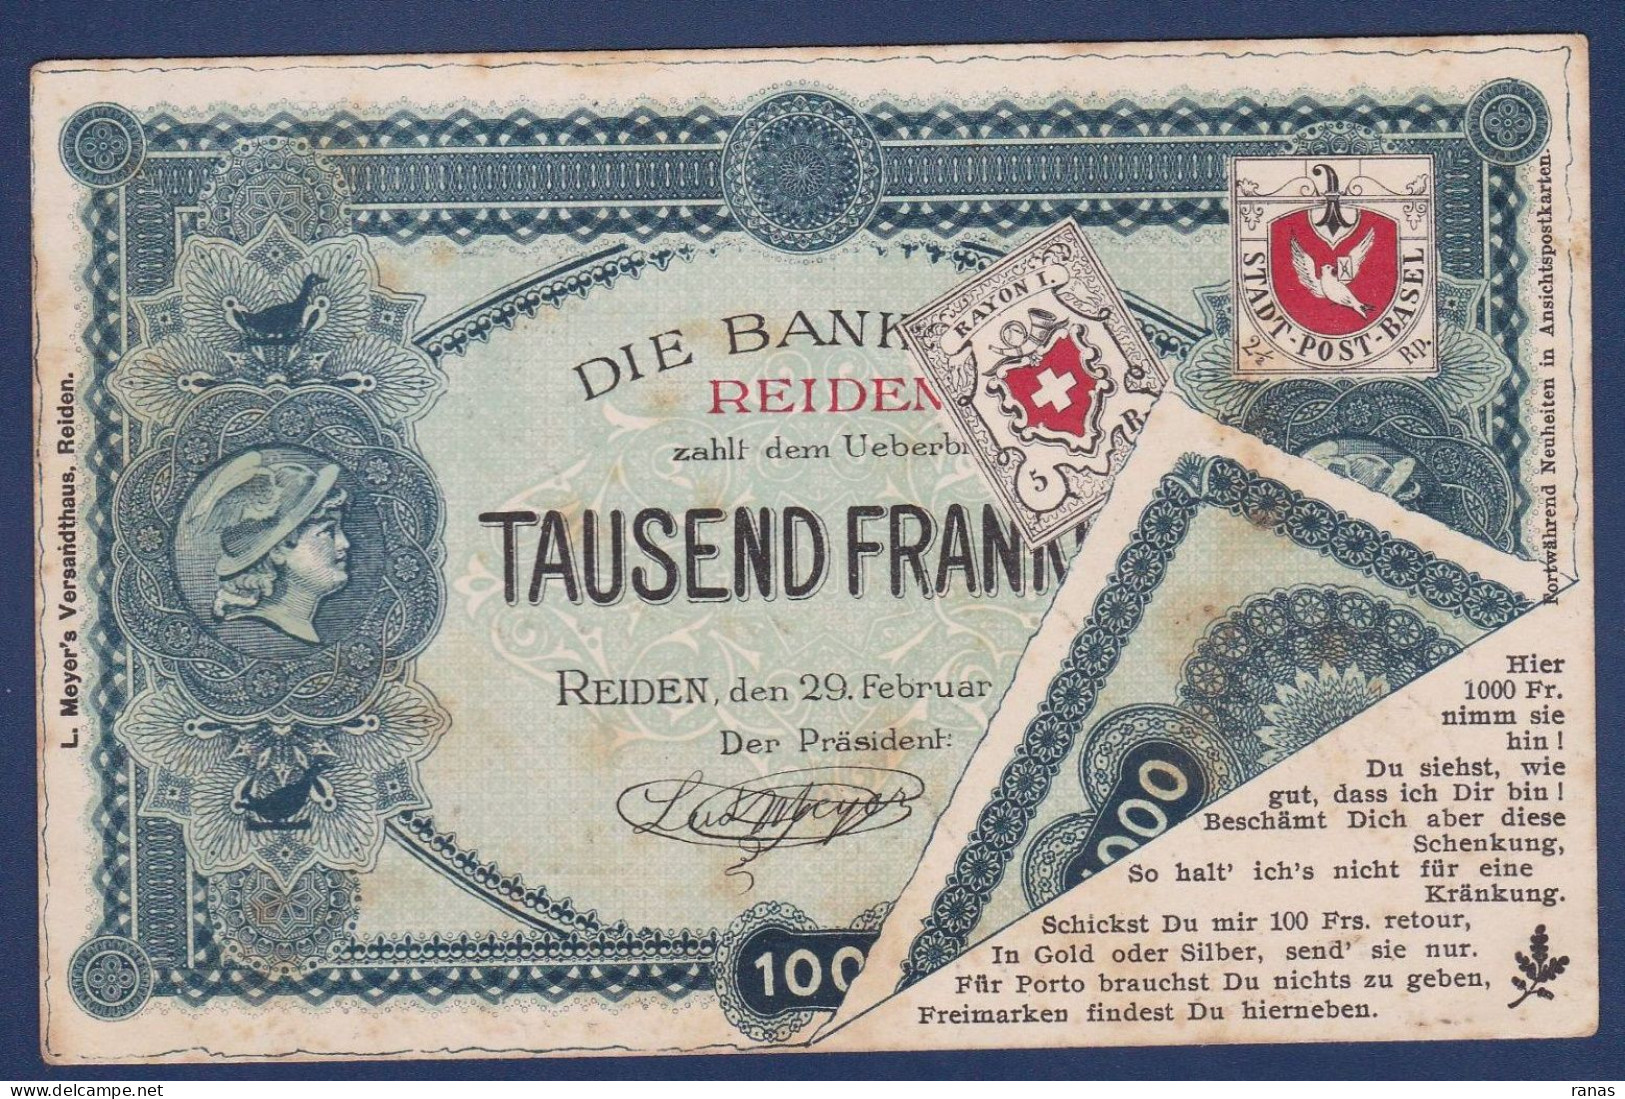 CPA Billet De Banque Banknote Circulé Suisse - Münzen (Abb.)